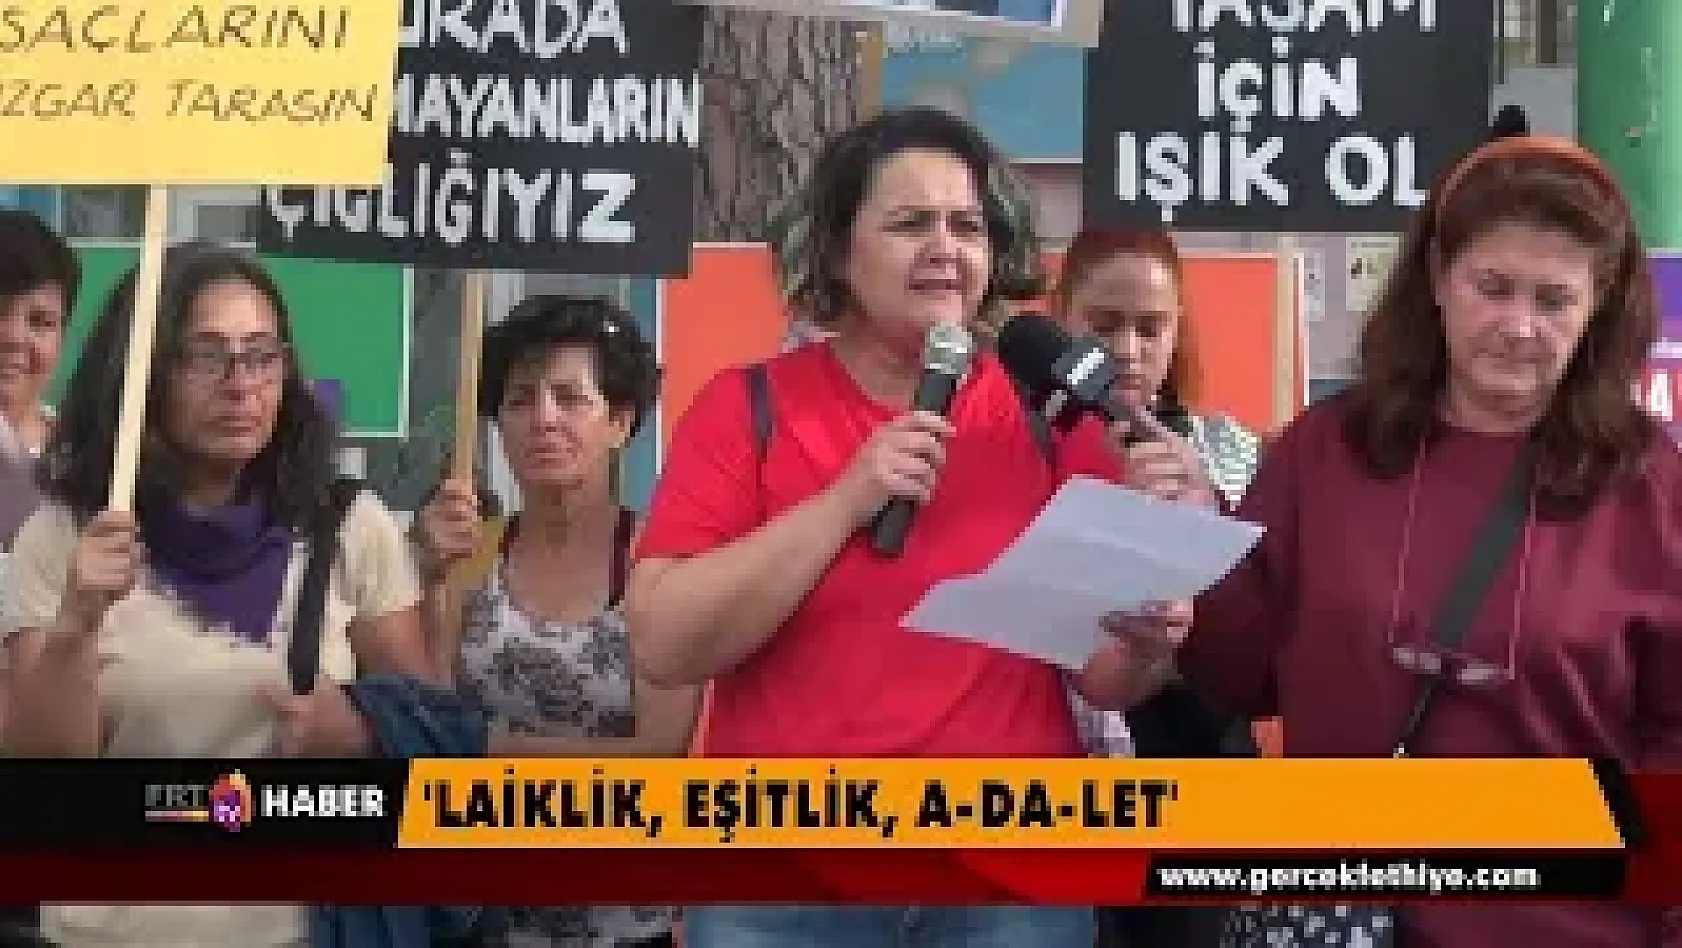 Fethiye Kadın Platformu Beşkaza Meydanı'nda 'Laiklik, eşitlik, adalet' sloganlarıyla açıklama yaptı